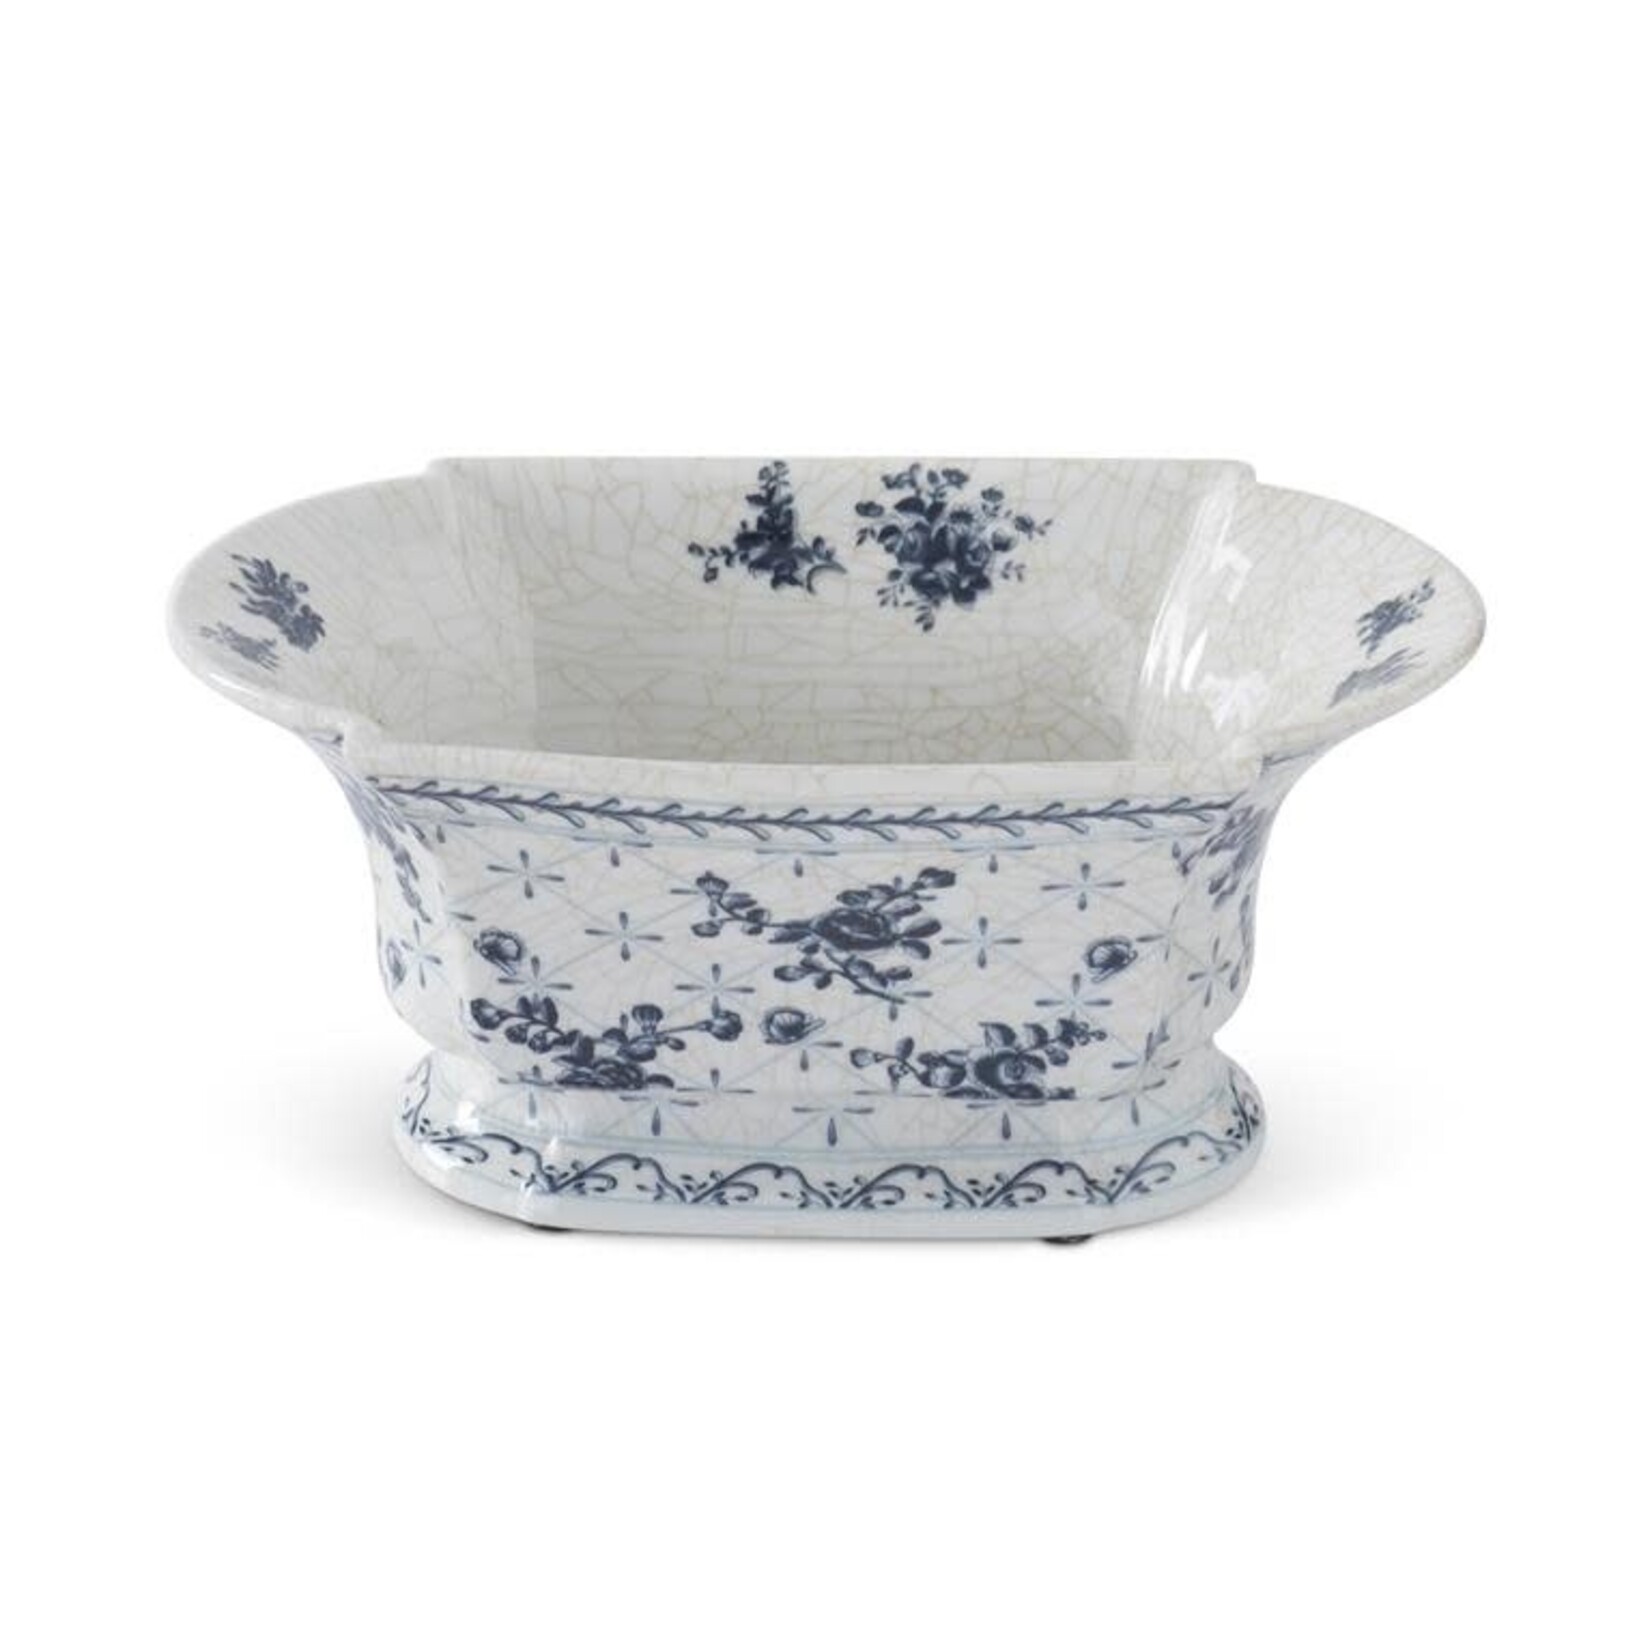 K&K 13 Inch White & Blue Floral Ceramic Oval Fluted Bowl